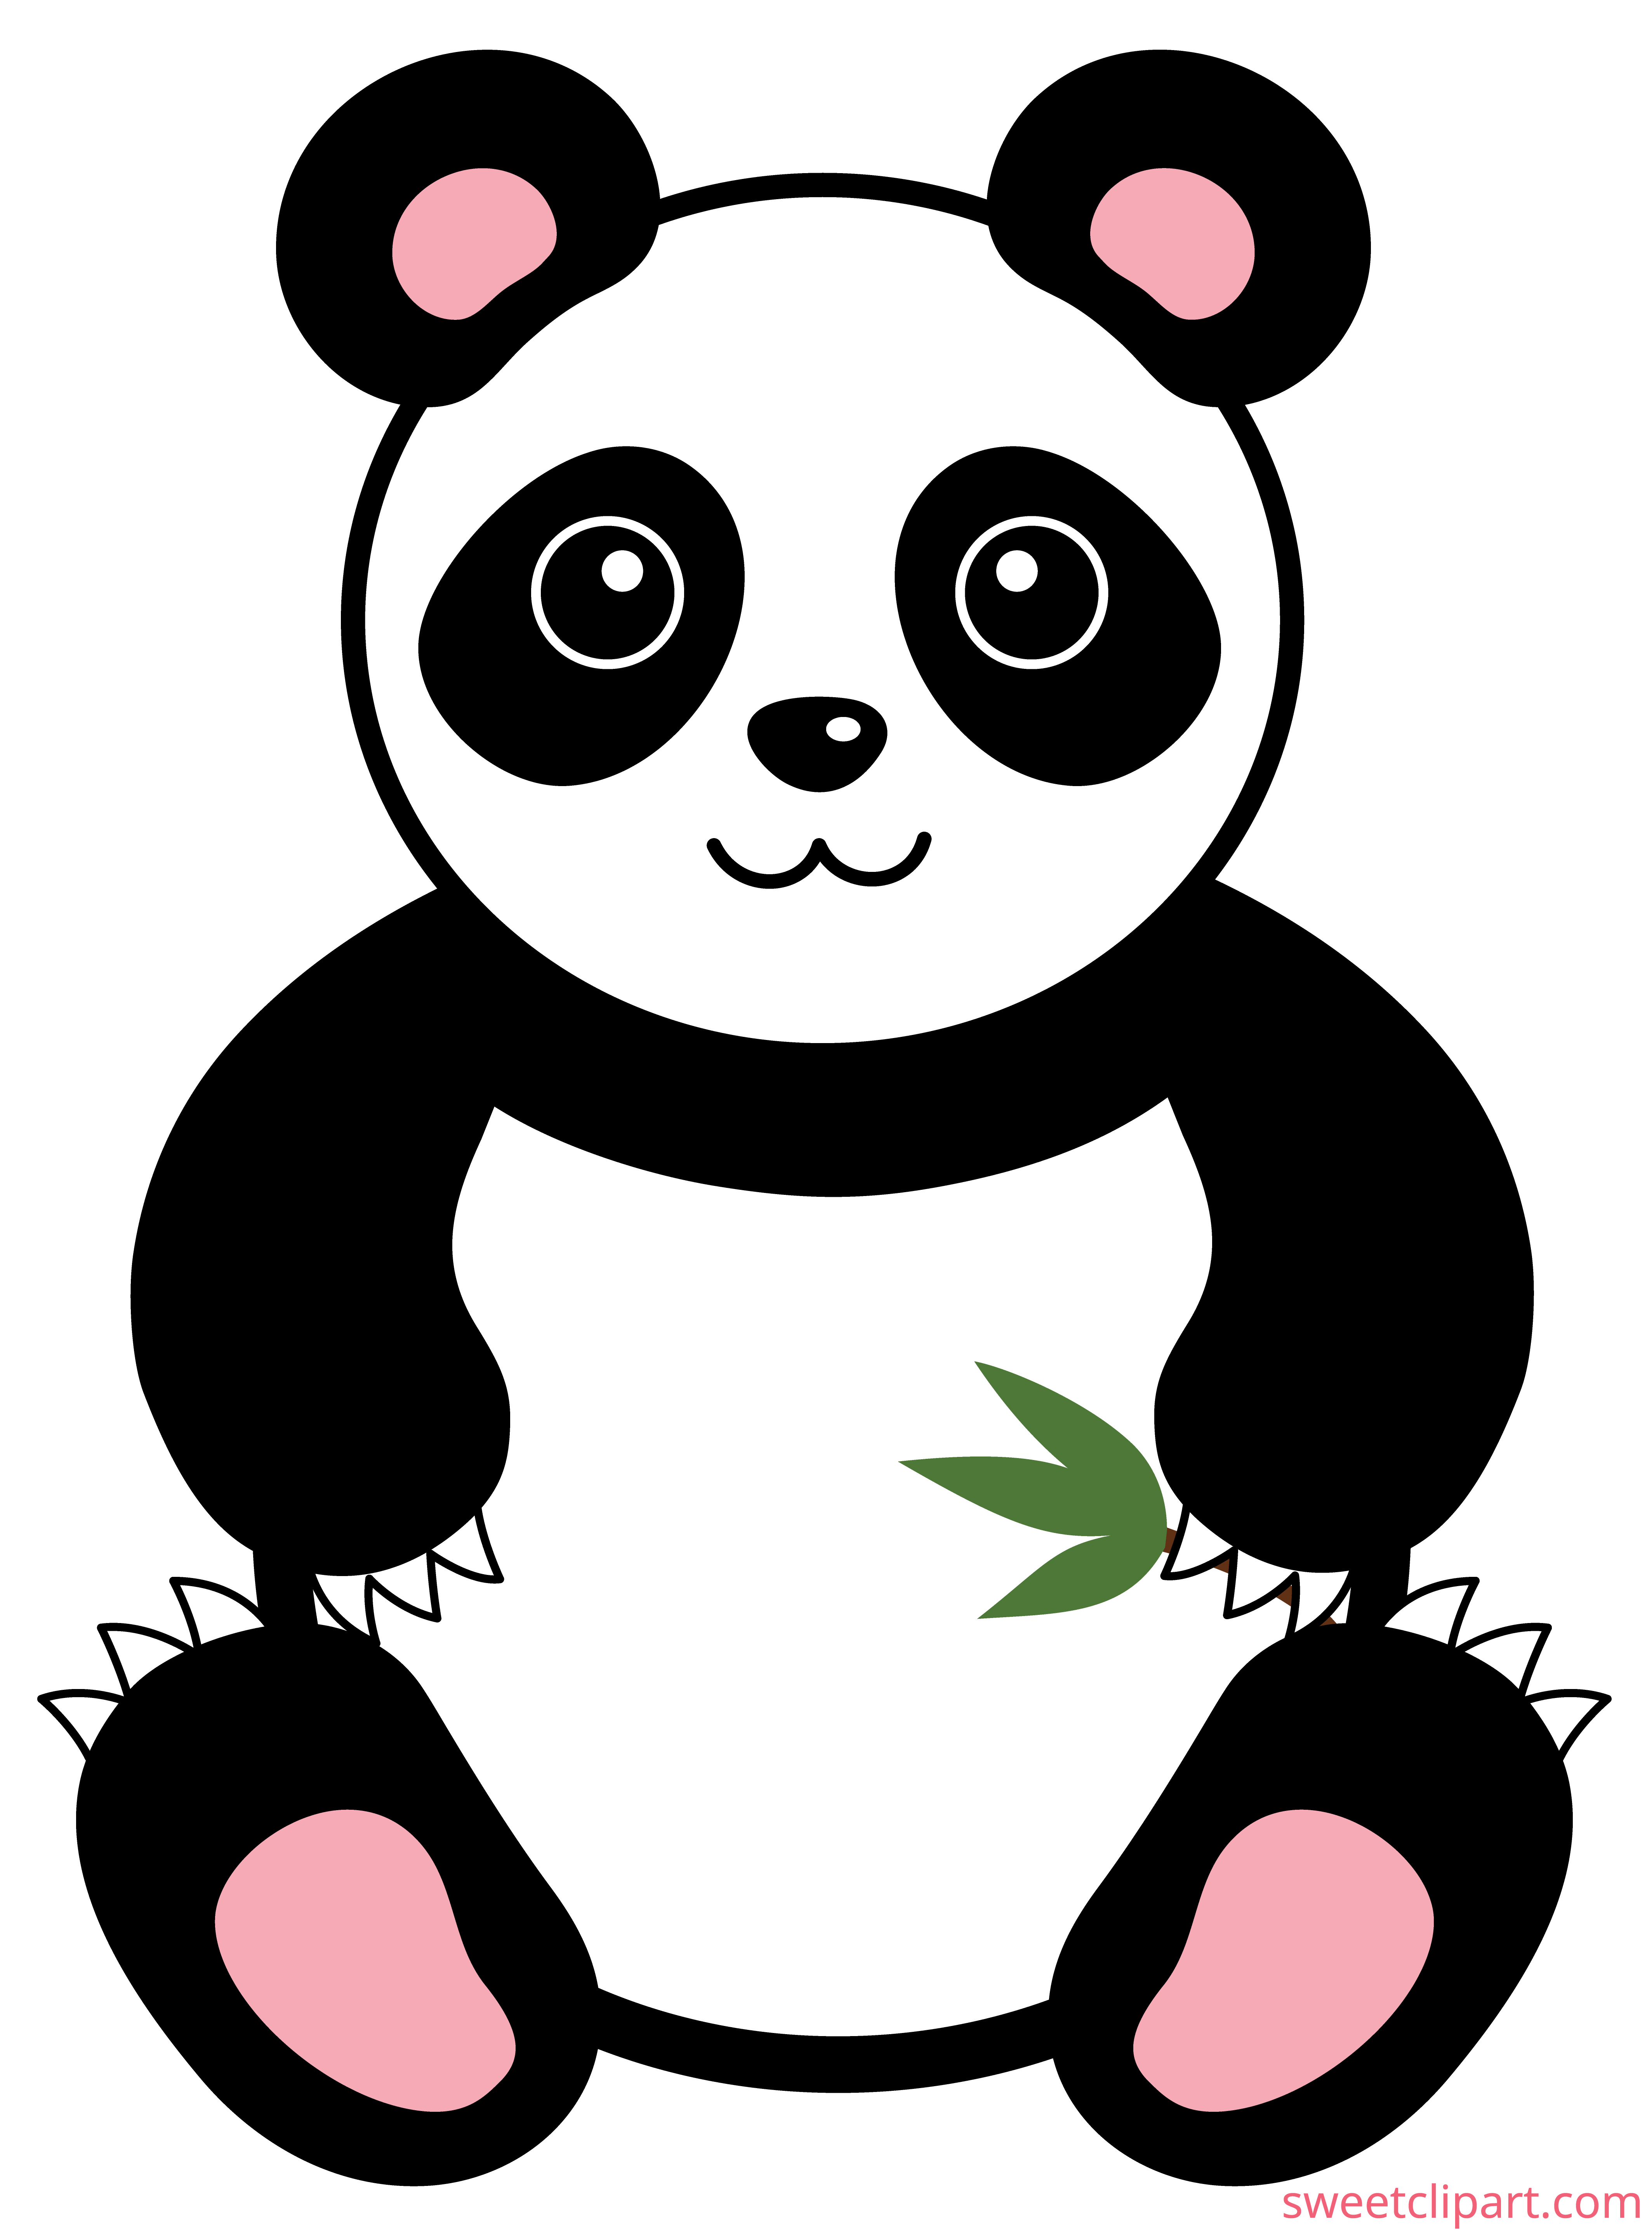 panda bear clipart